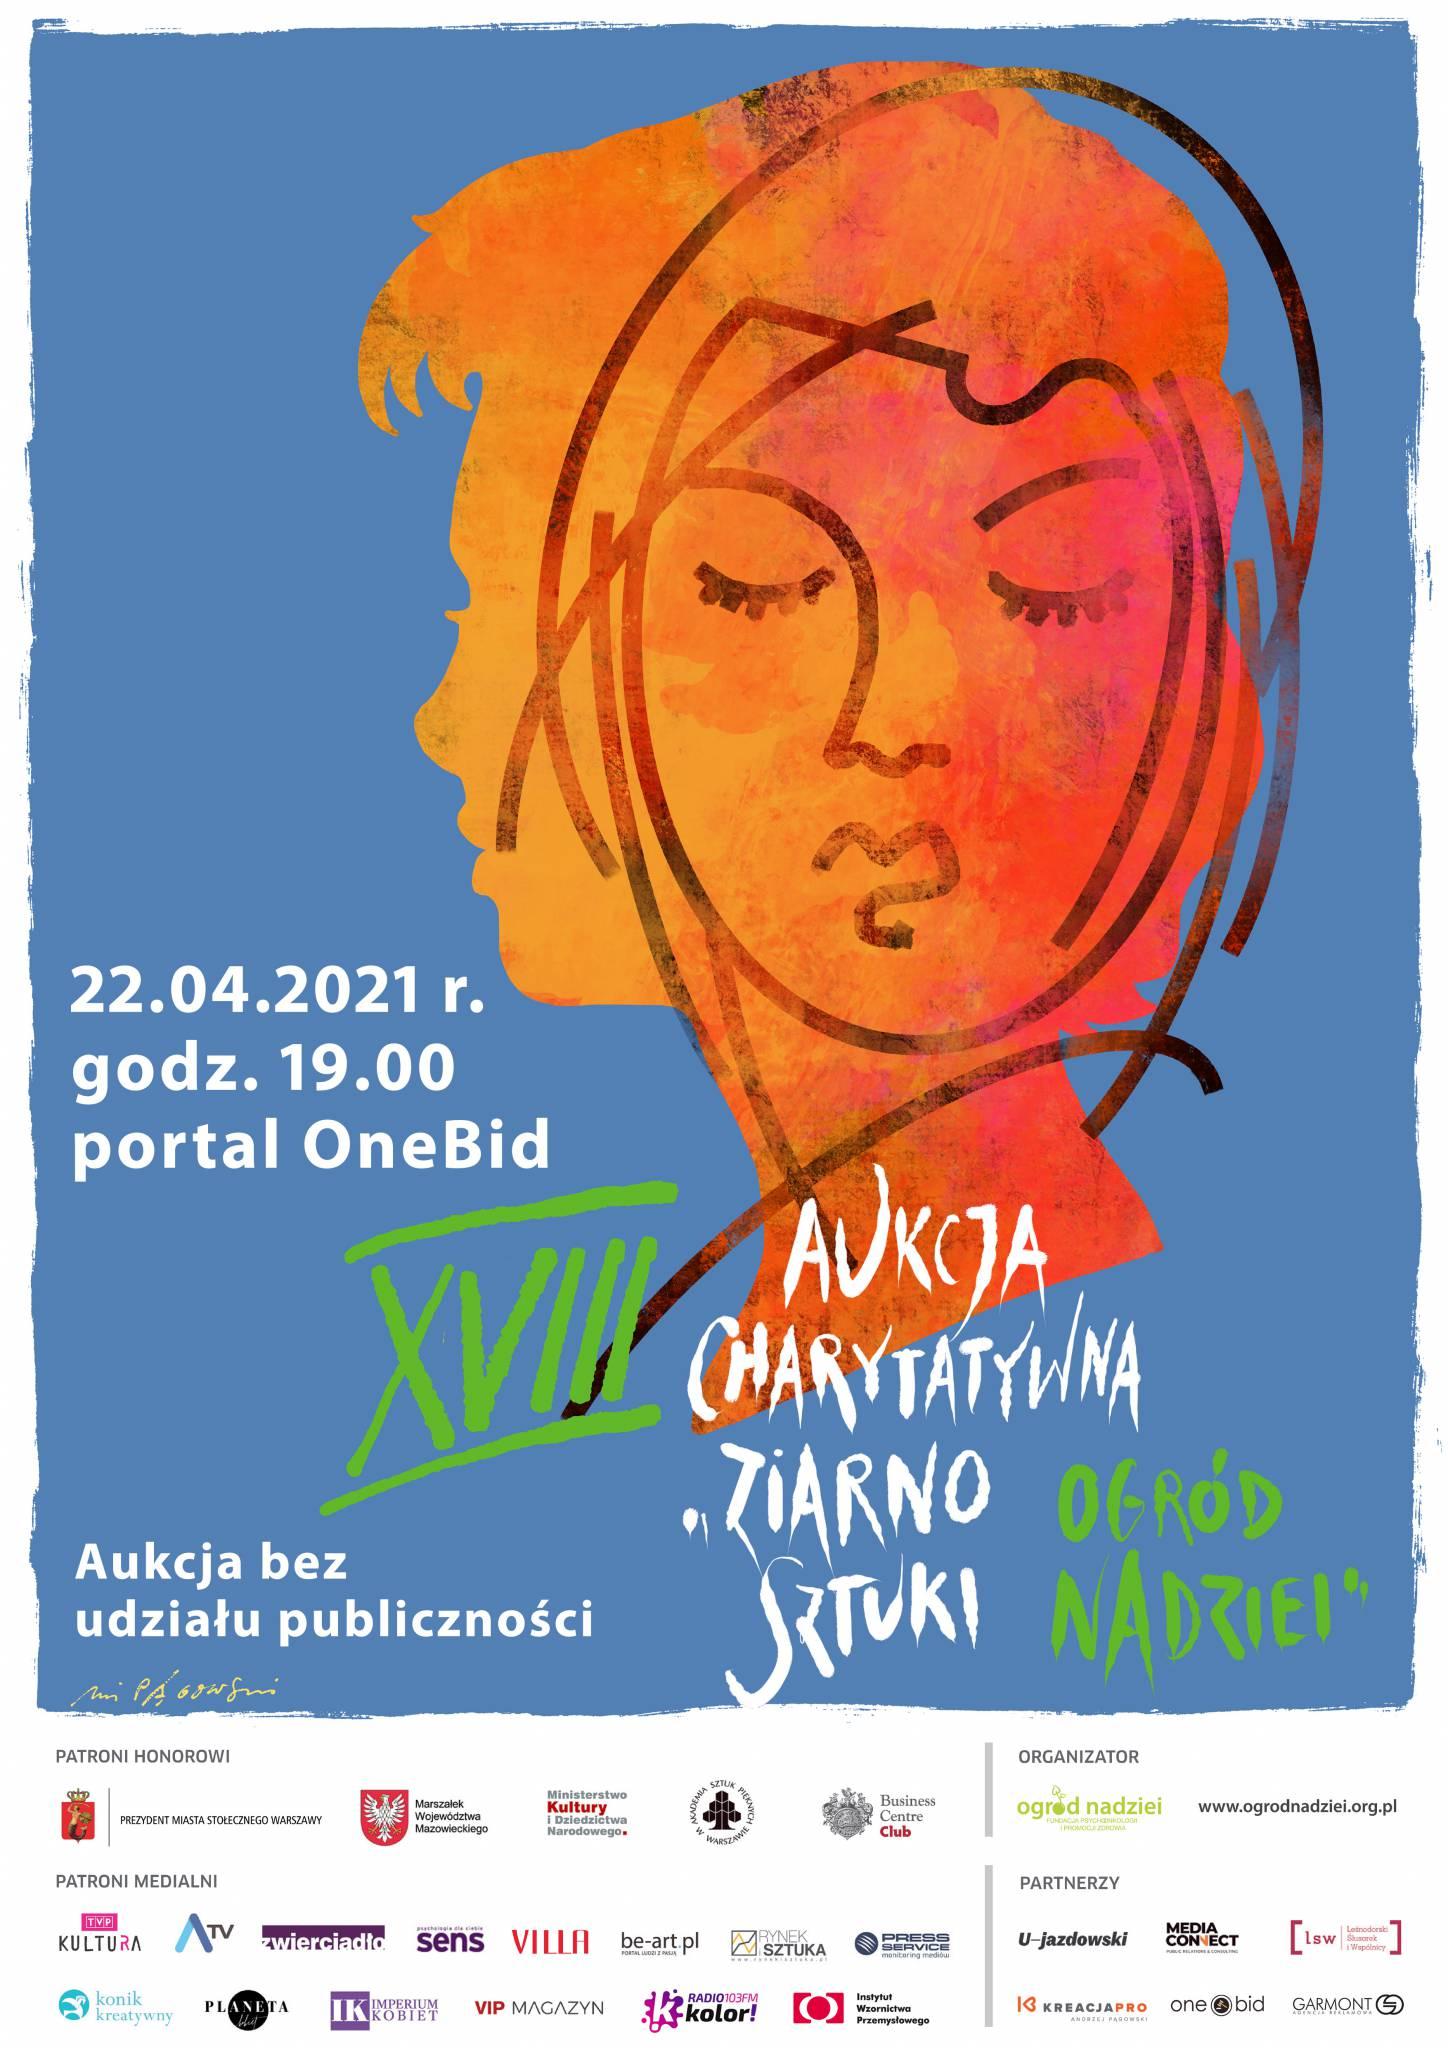  Plakat aukcji został zaprojektowany przez Andrzeja Pągowskiego, przyjaciela Fundacji, który od lat wspiera aukcje „ziarno SZTUKI – ogród NADZIEI” i Fundację.